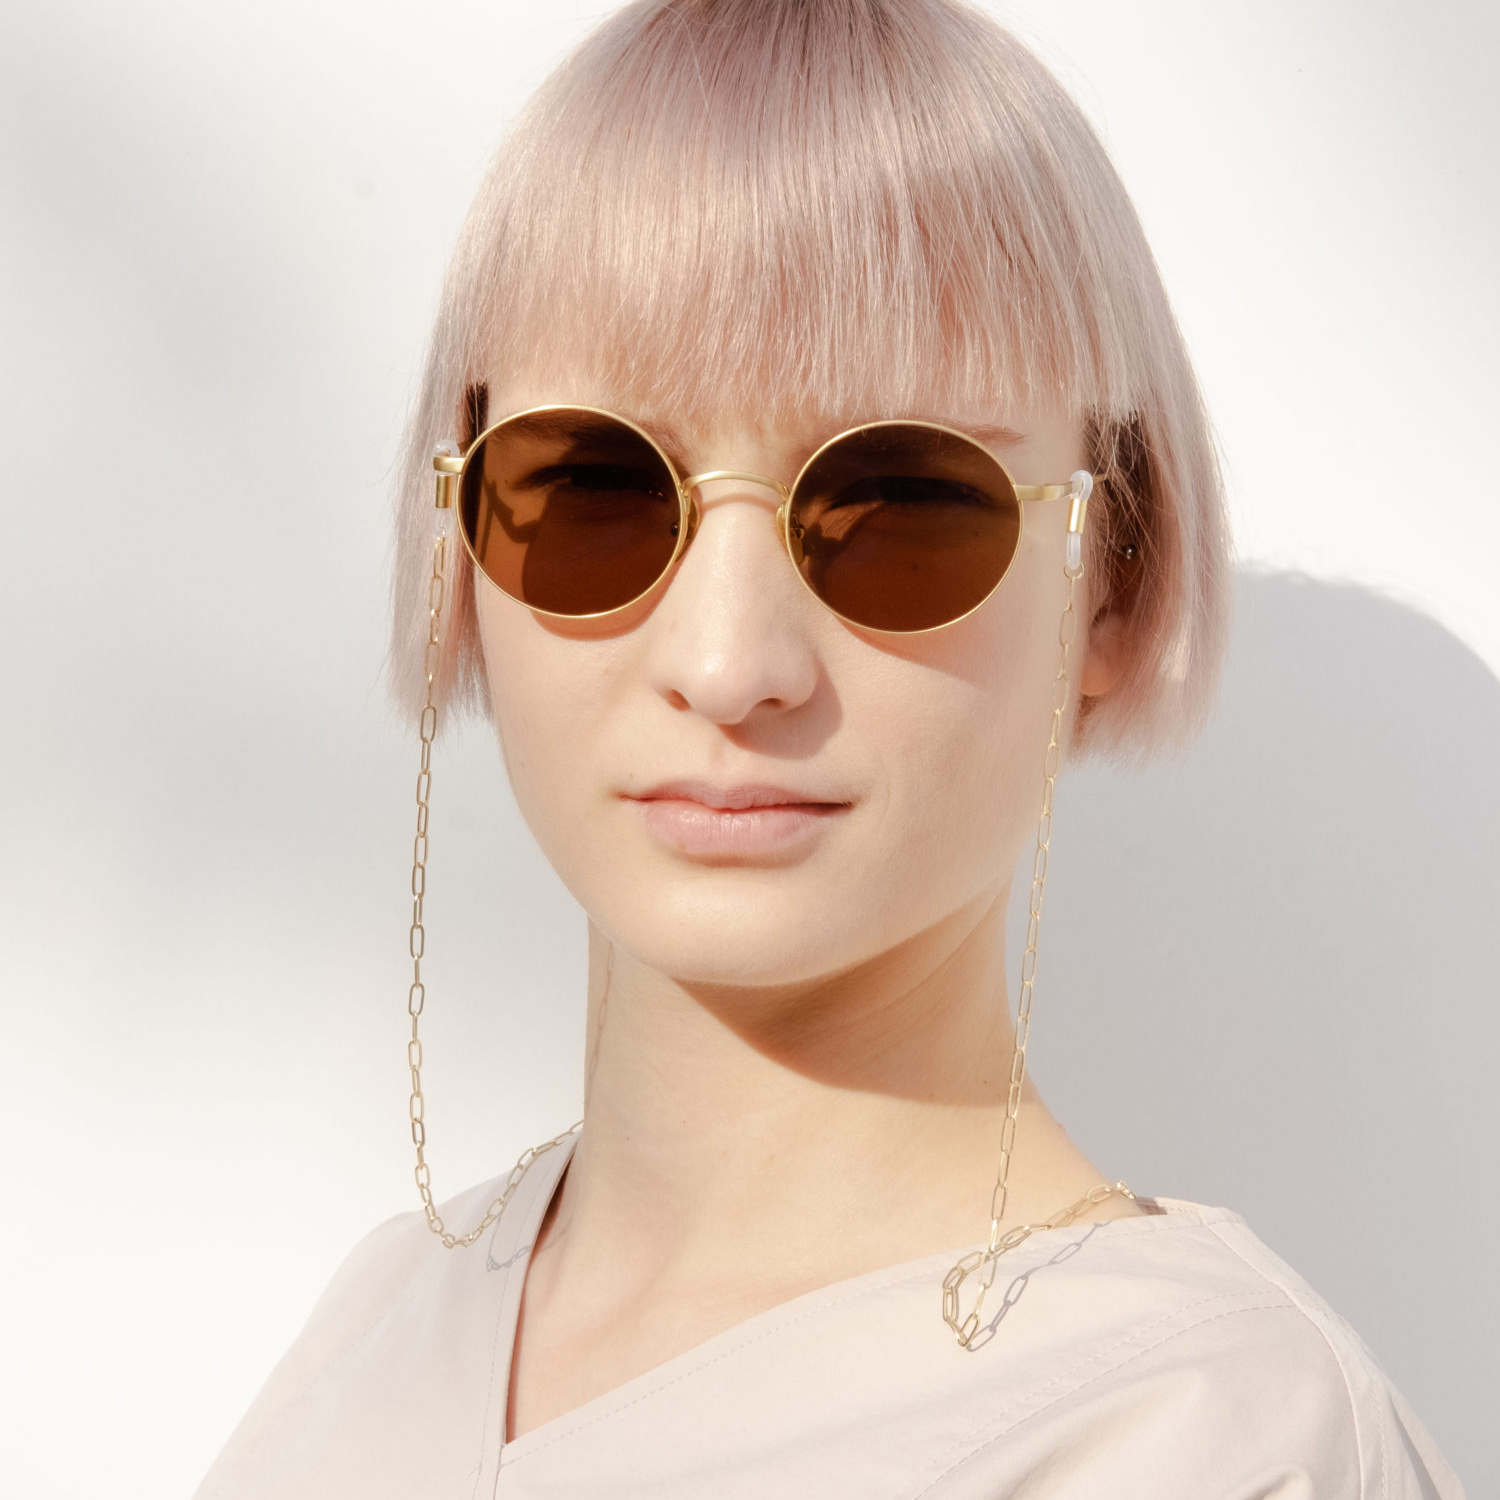 Sonnenbrille kaufen Berlin Von Südkorea in die Hauptstadt: Yun steht für moderne, erschwingliche Brillen und einen schnellen Service.